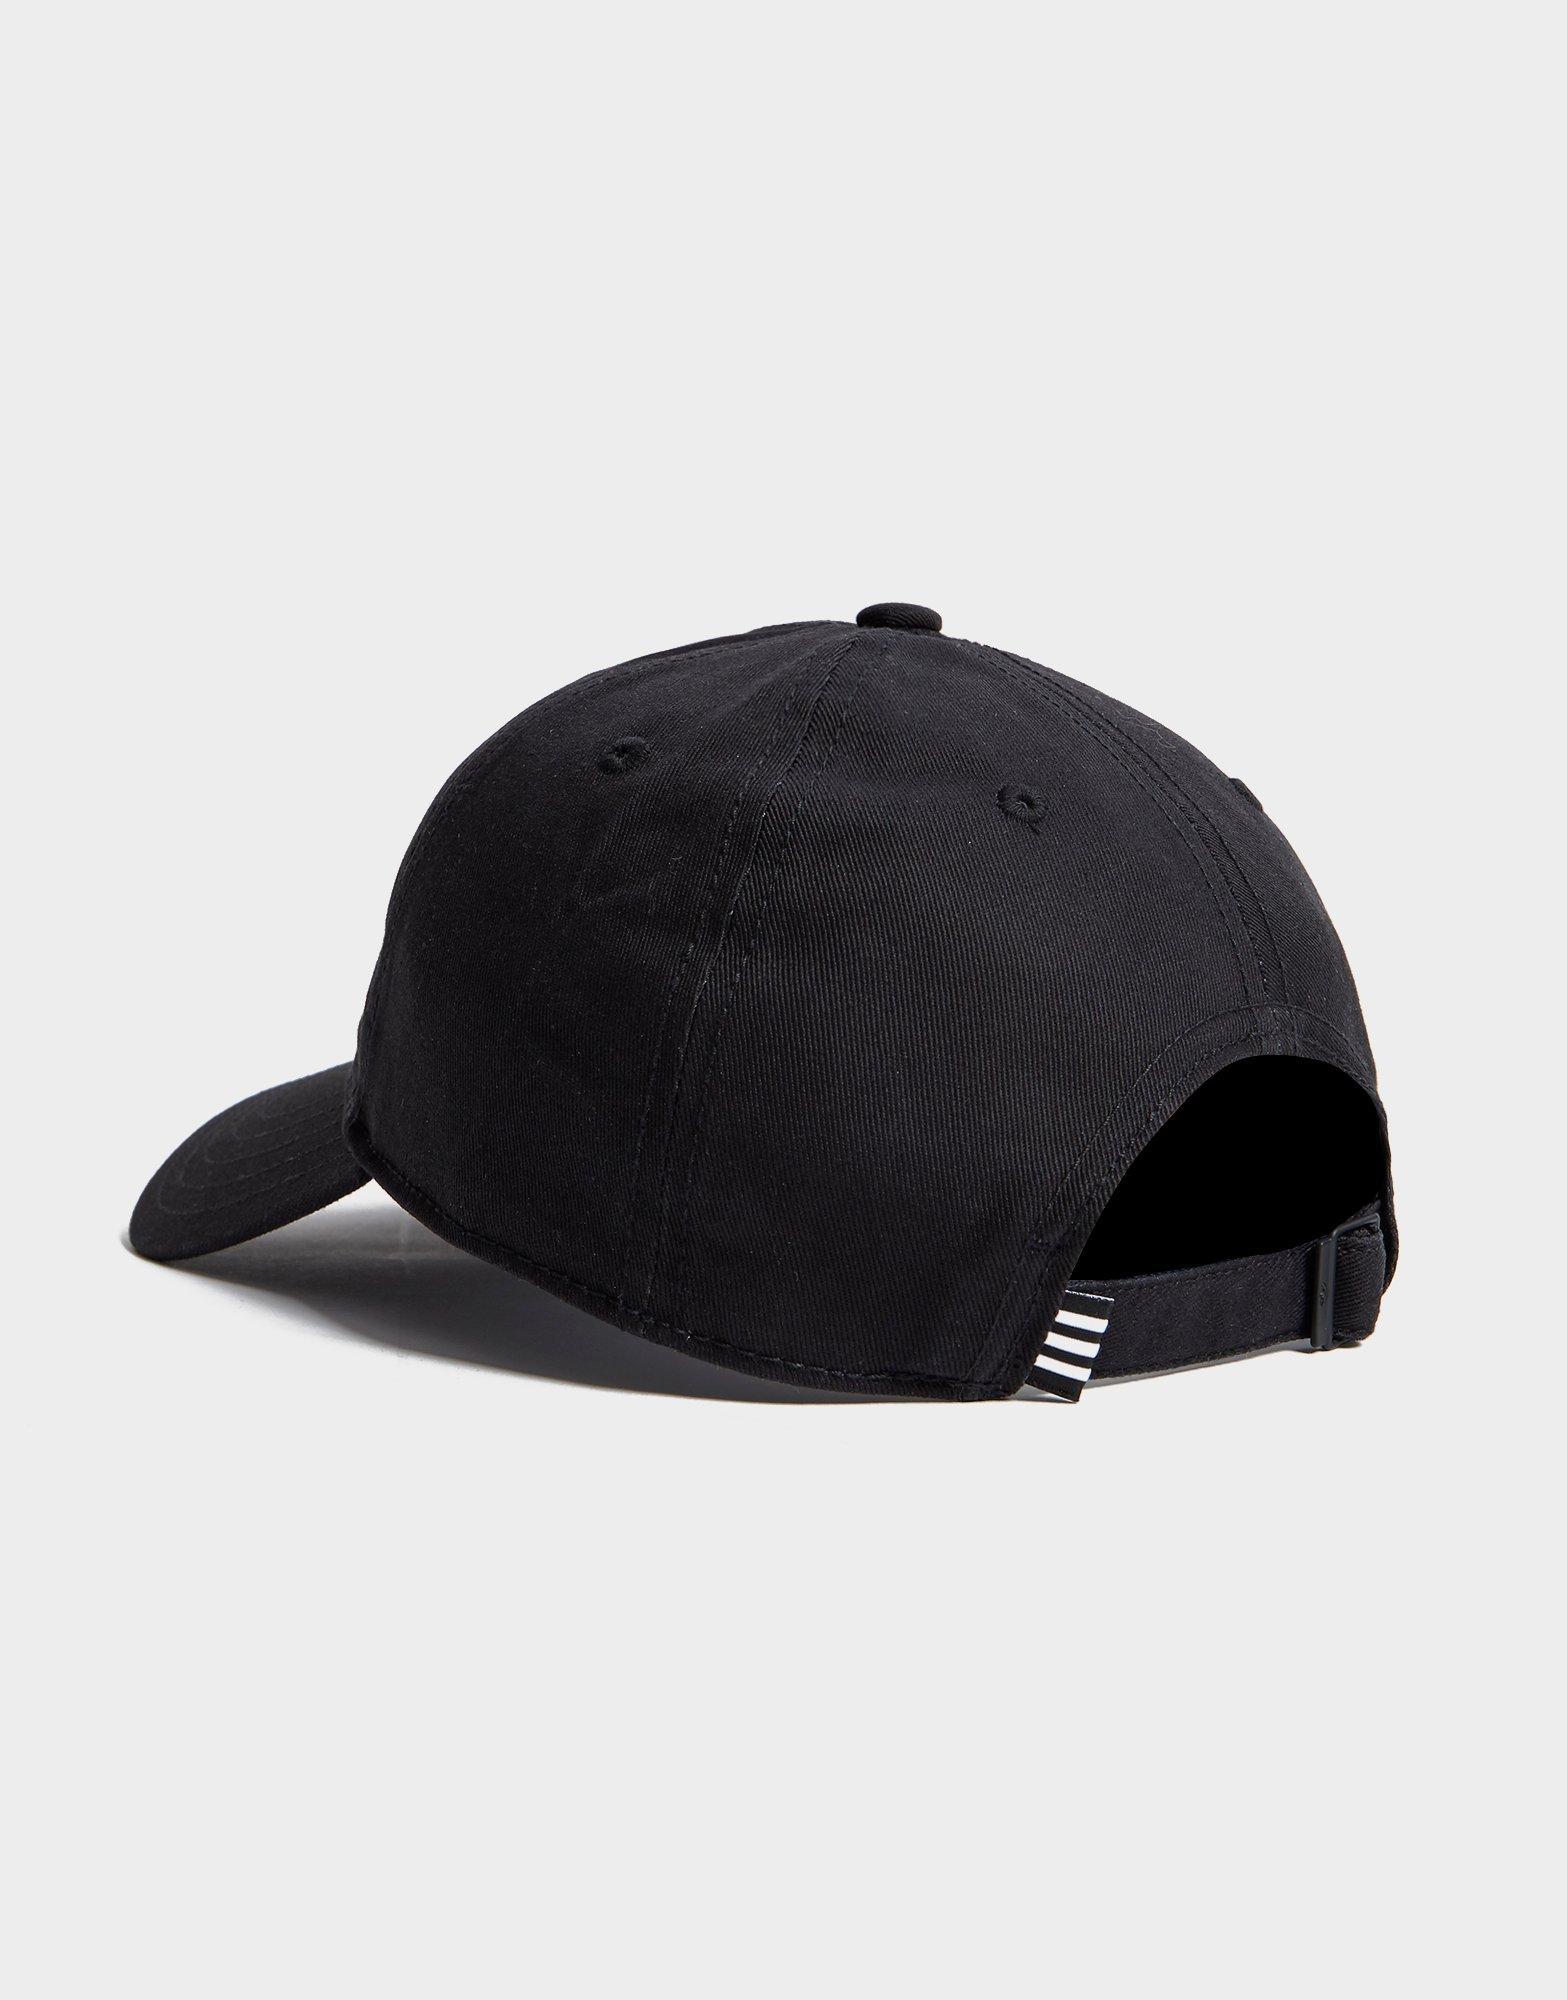 adidas Originals Synthetic Trefoil Classic Cap in Black for Men - Lyst